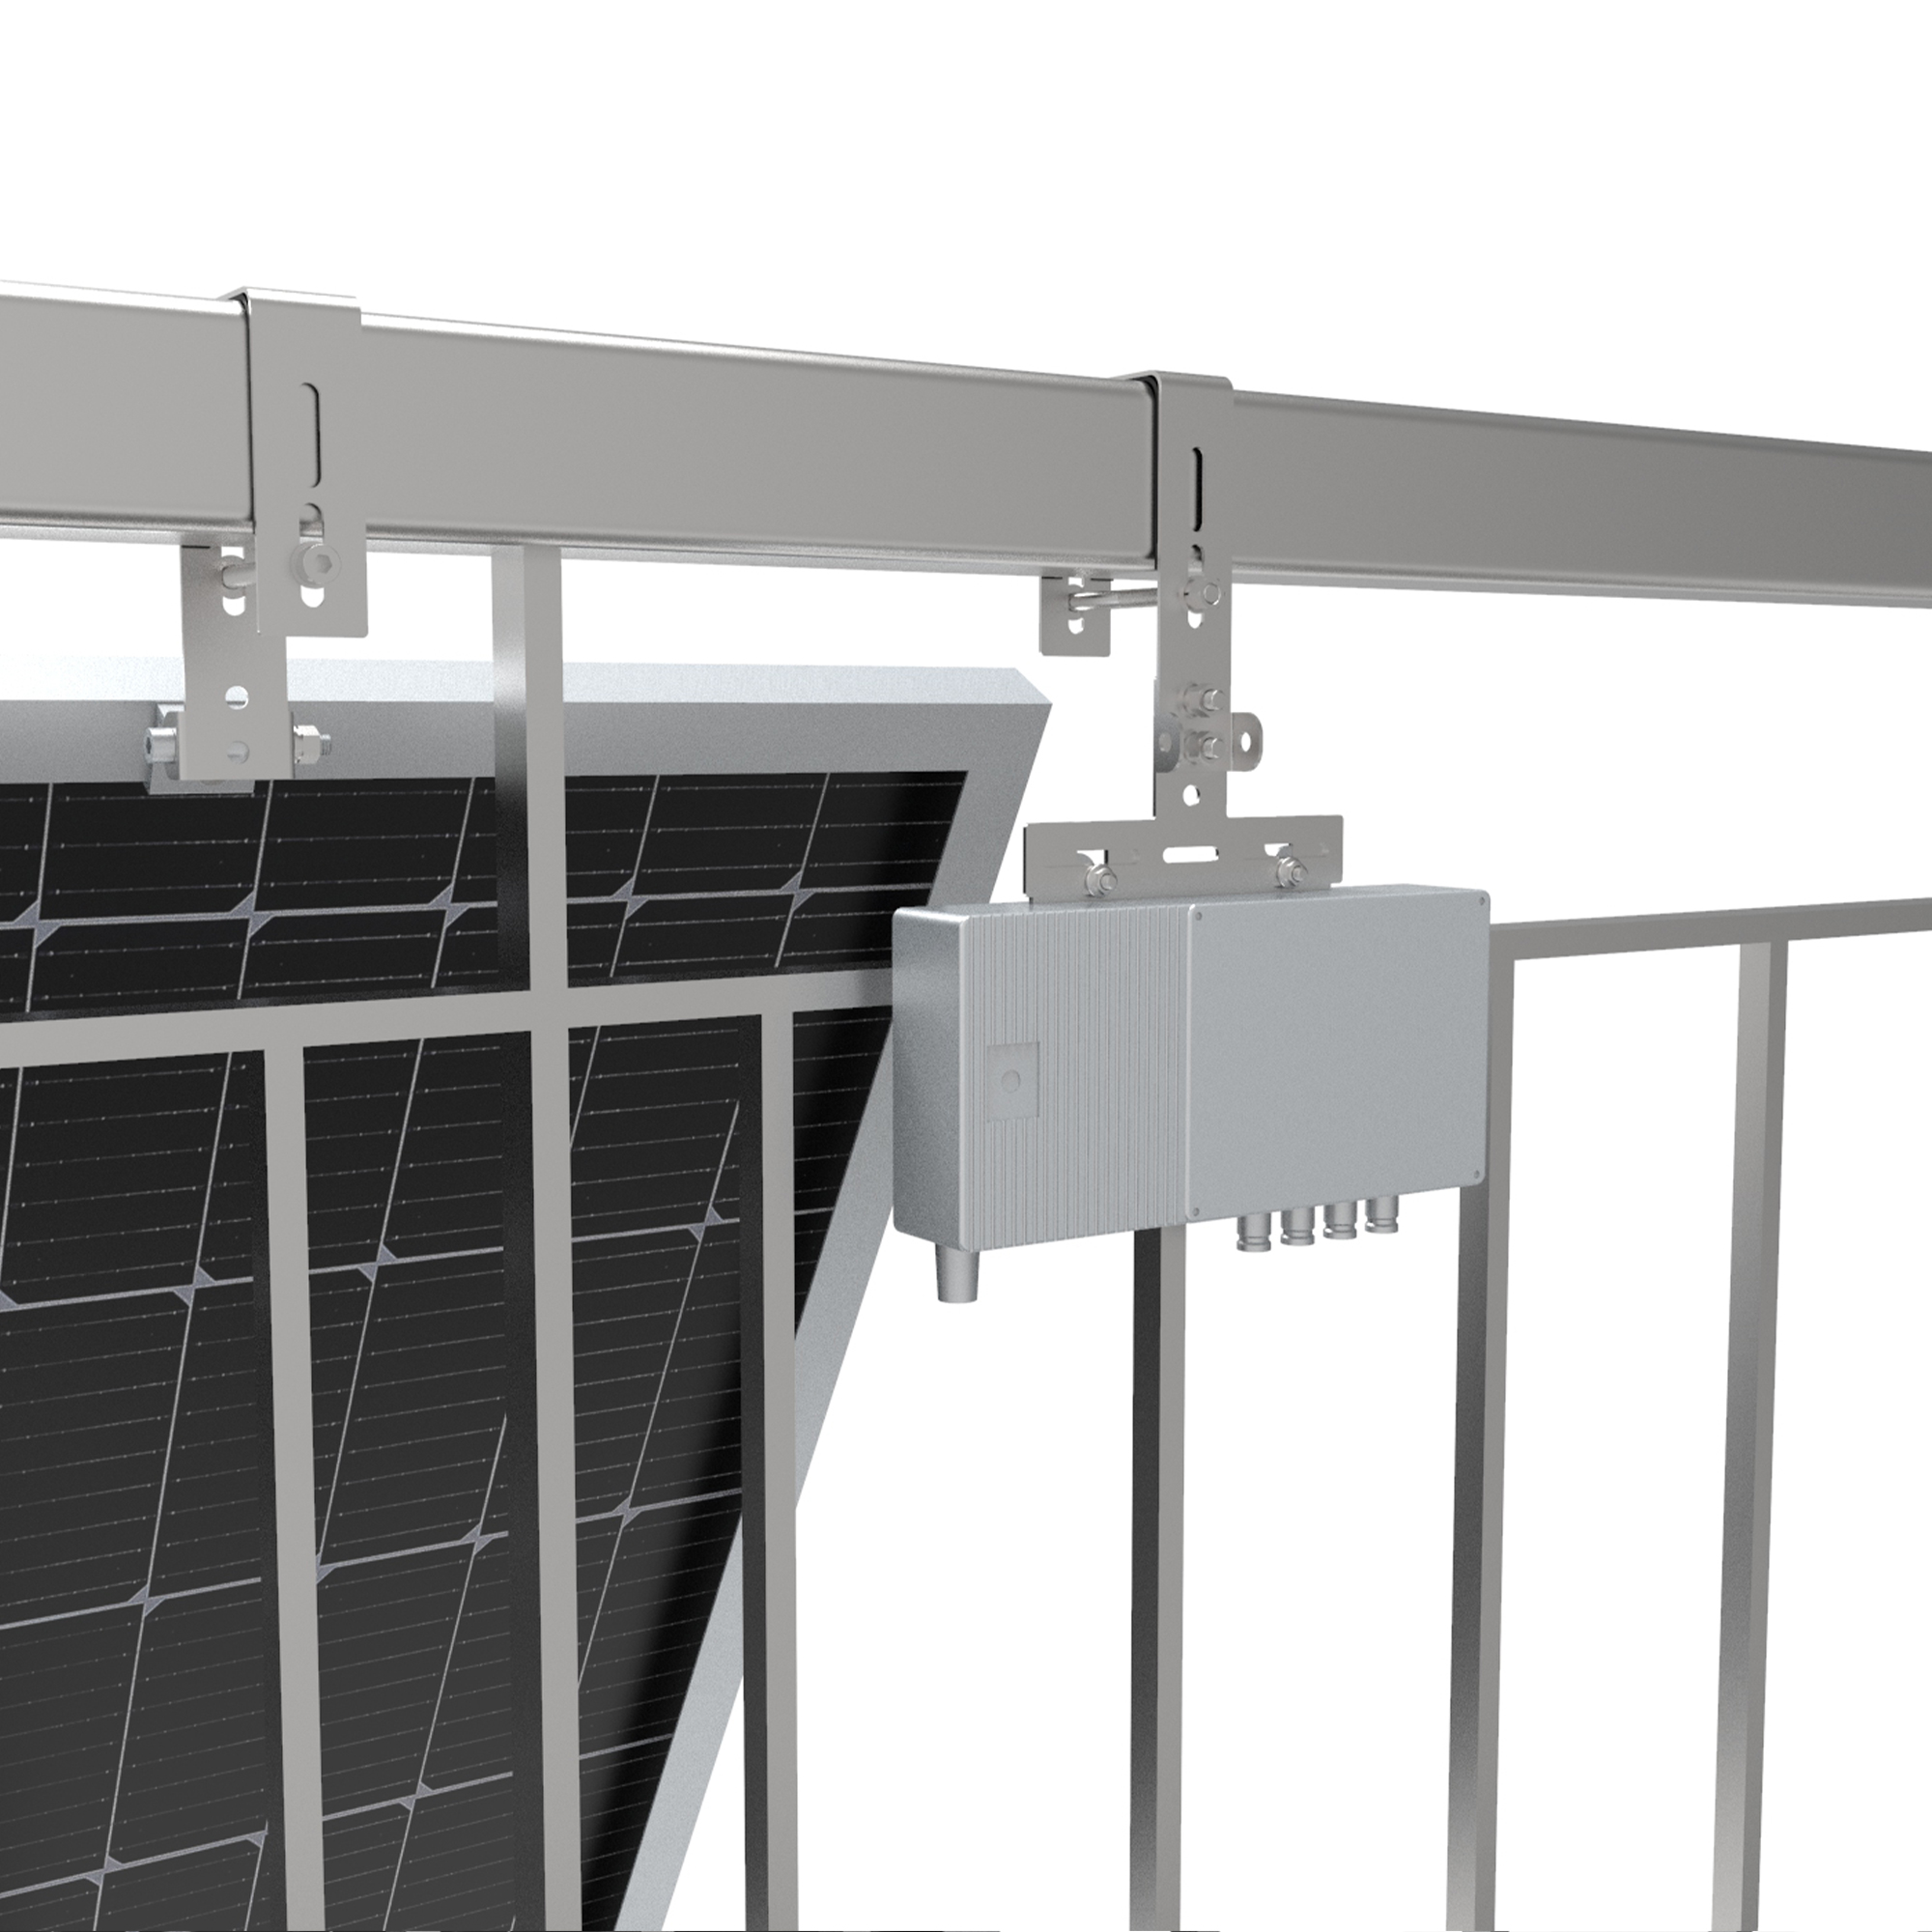 Solarmodul Balkonkraftwerkhalterung NUASOL Geländer Photovoltaik, Silber 1 Befestigung